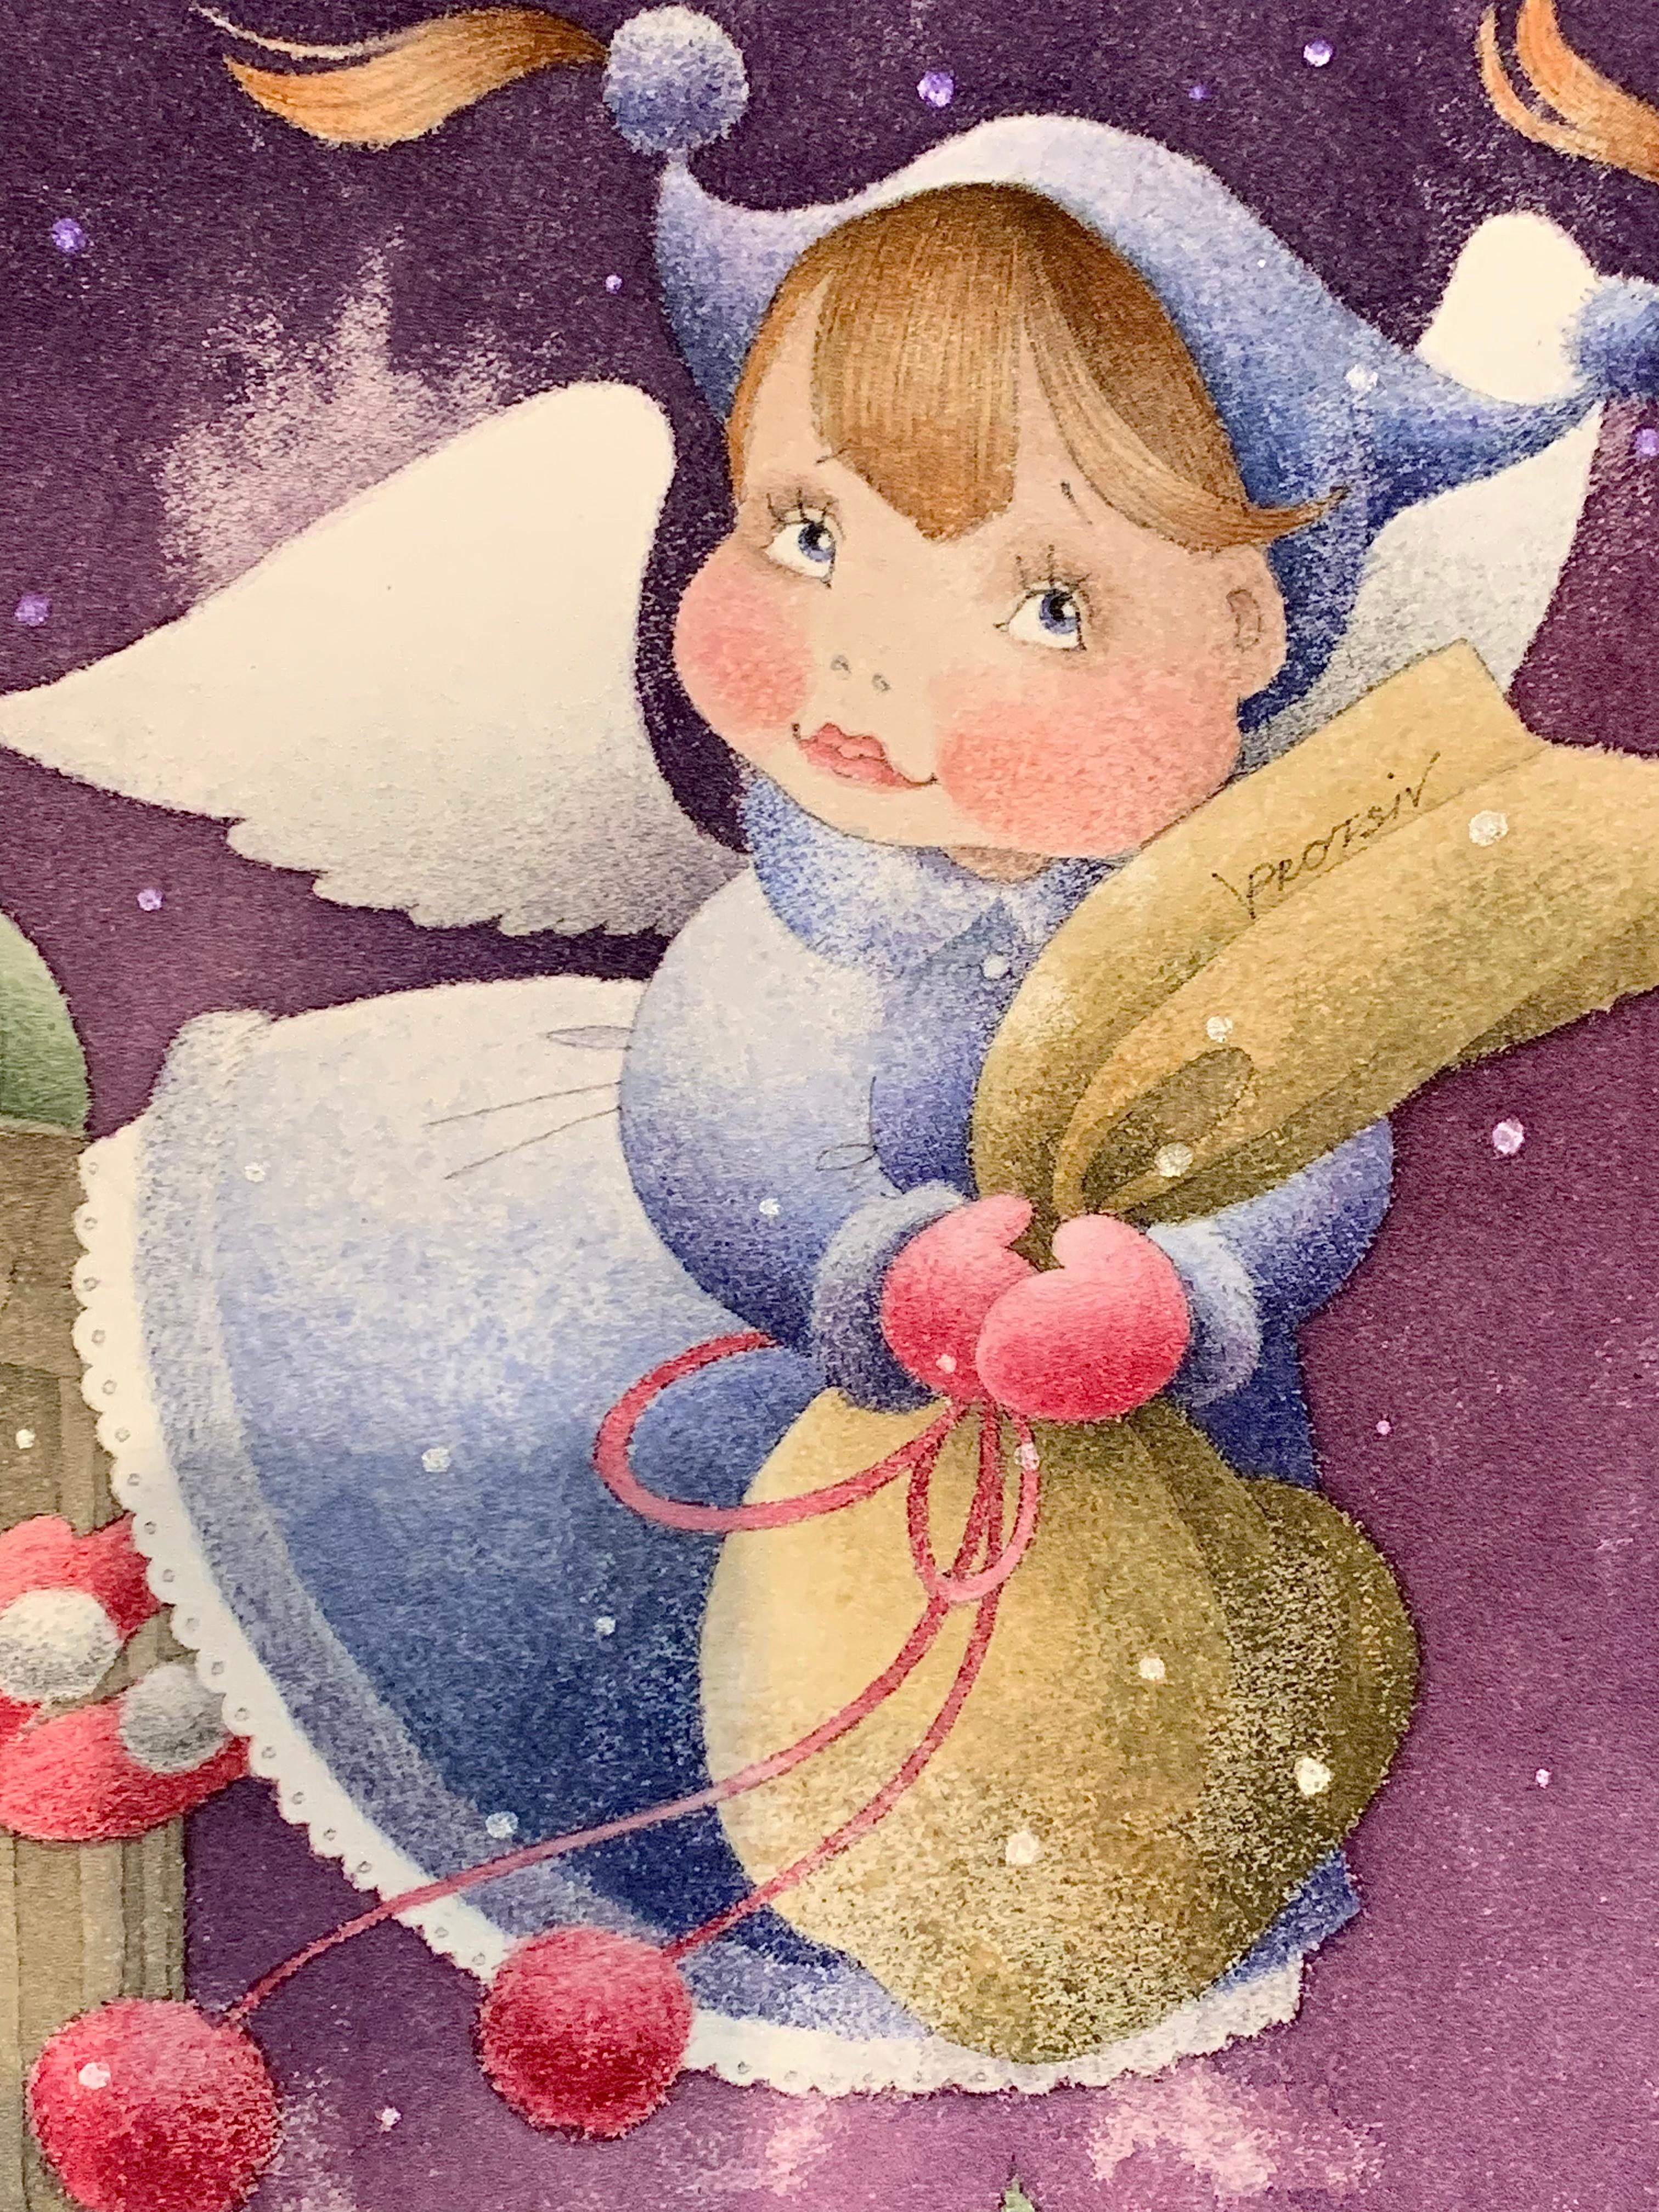 Un ange magnifique et joyeux plane sur les toits de Lviv devant un ciel nocturne violet changeant, entouré de flocons de neige et de lumières polaires. 
Elle tient un sac rempli de cadeaux et de promesses.
Viktoriya Protsiv est née en 1983 à Lviv,